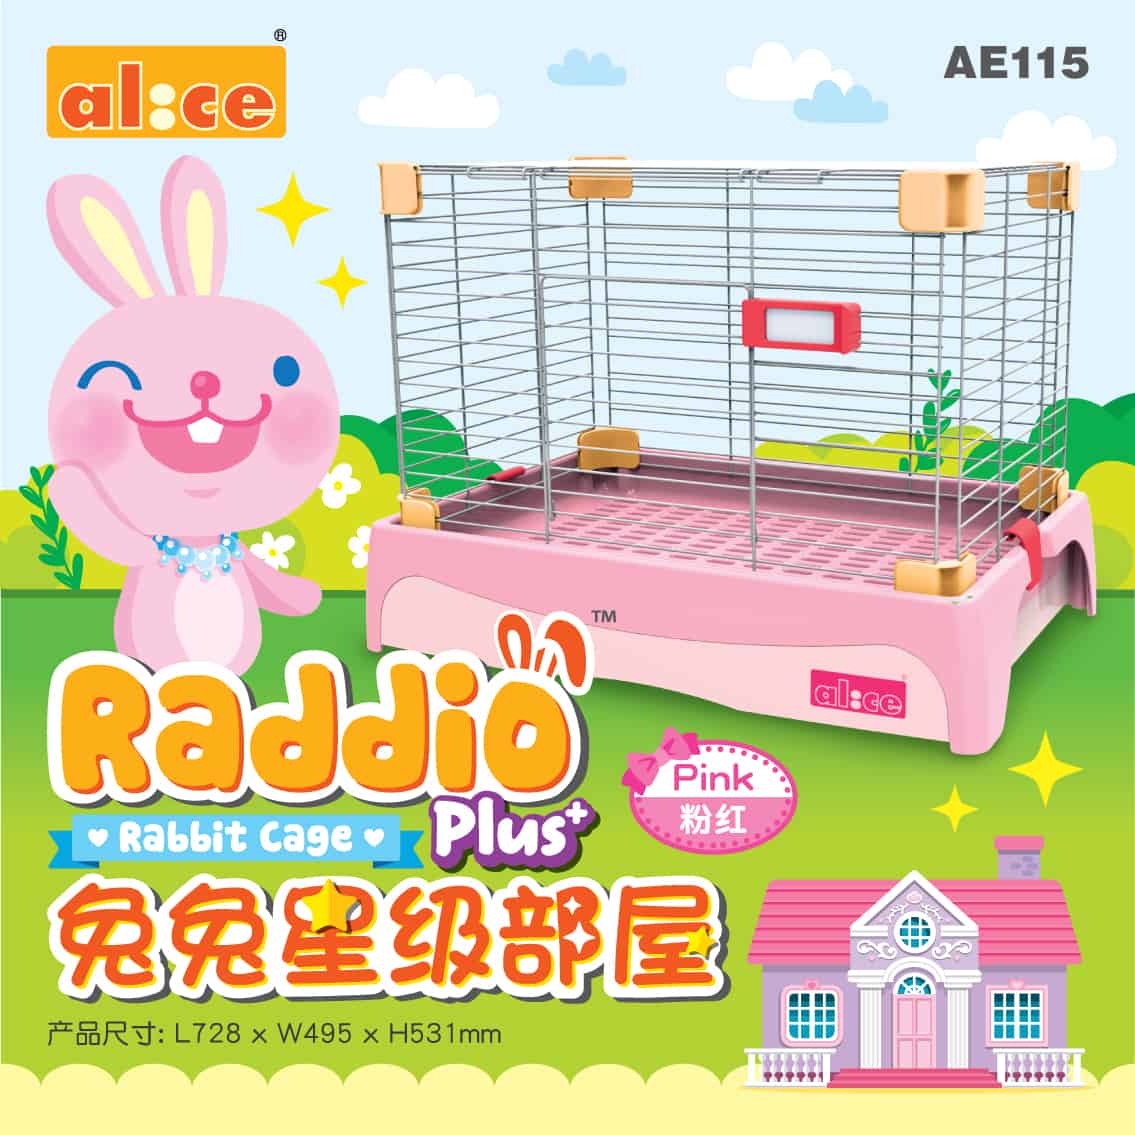 Alice AE115 Raddio Plus+ Rabbit Cage Pink